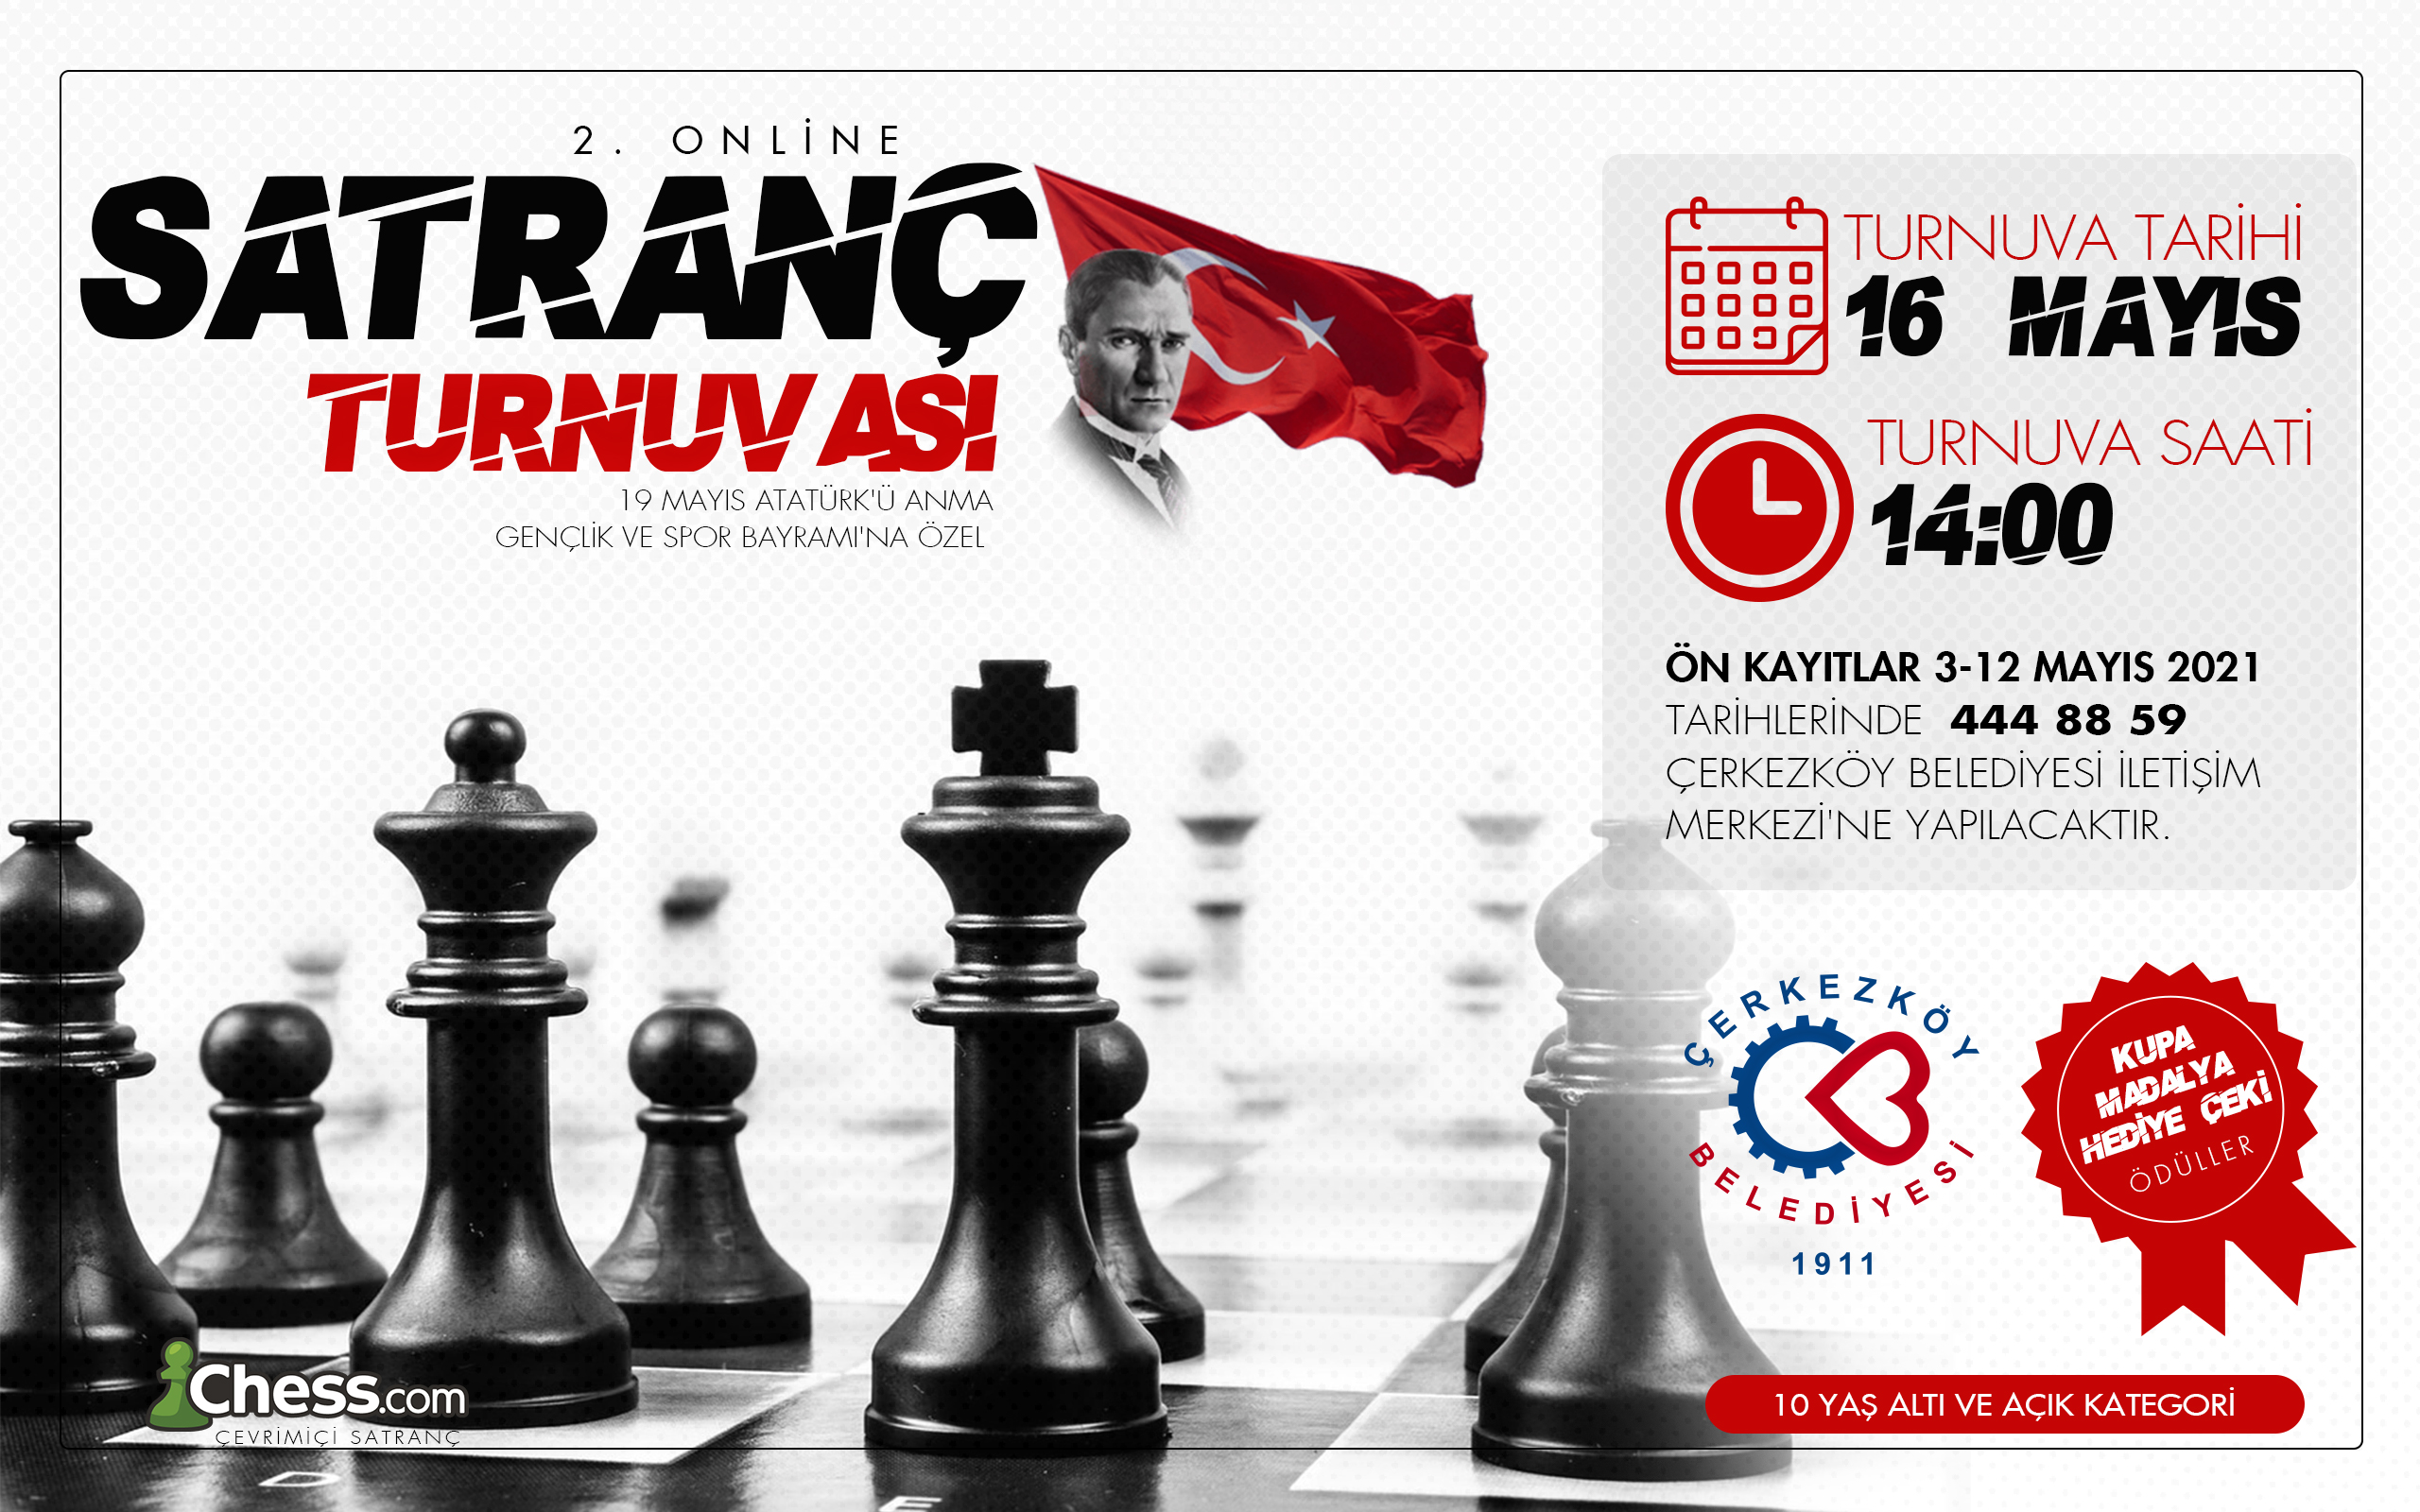  Çerkezköy’de İkinci Online Satranç Turnuvasının Kayıtları Başladı